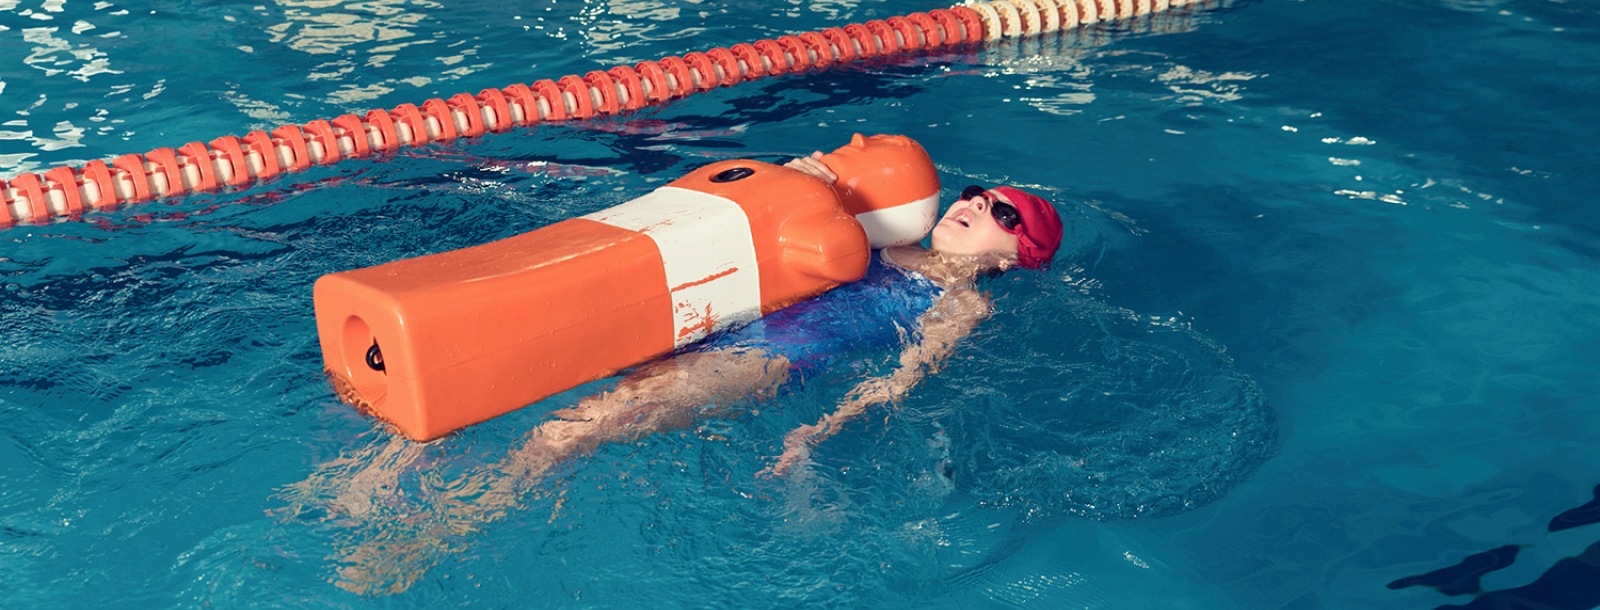 Meisje zwemt met pop in zwembad